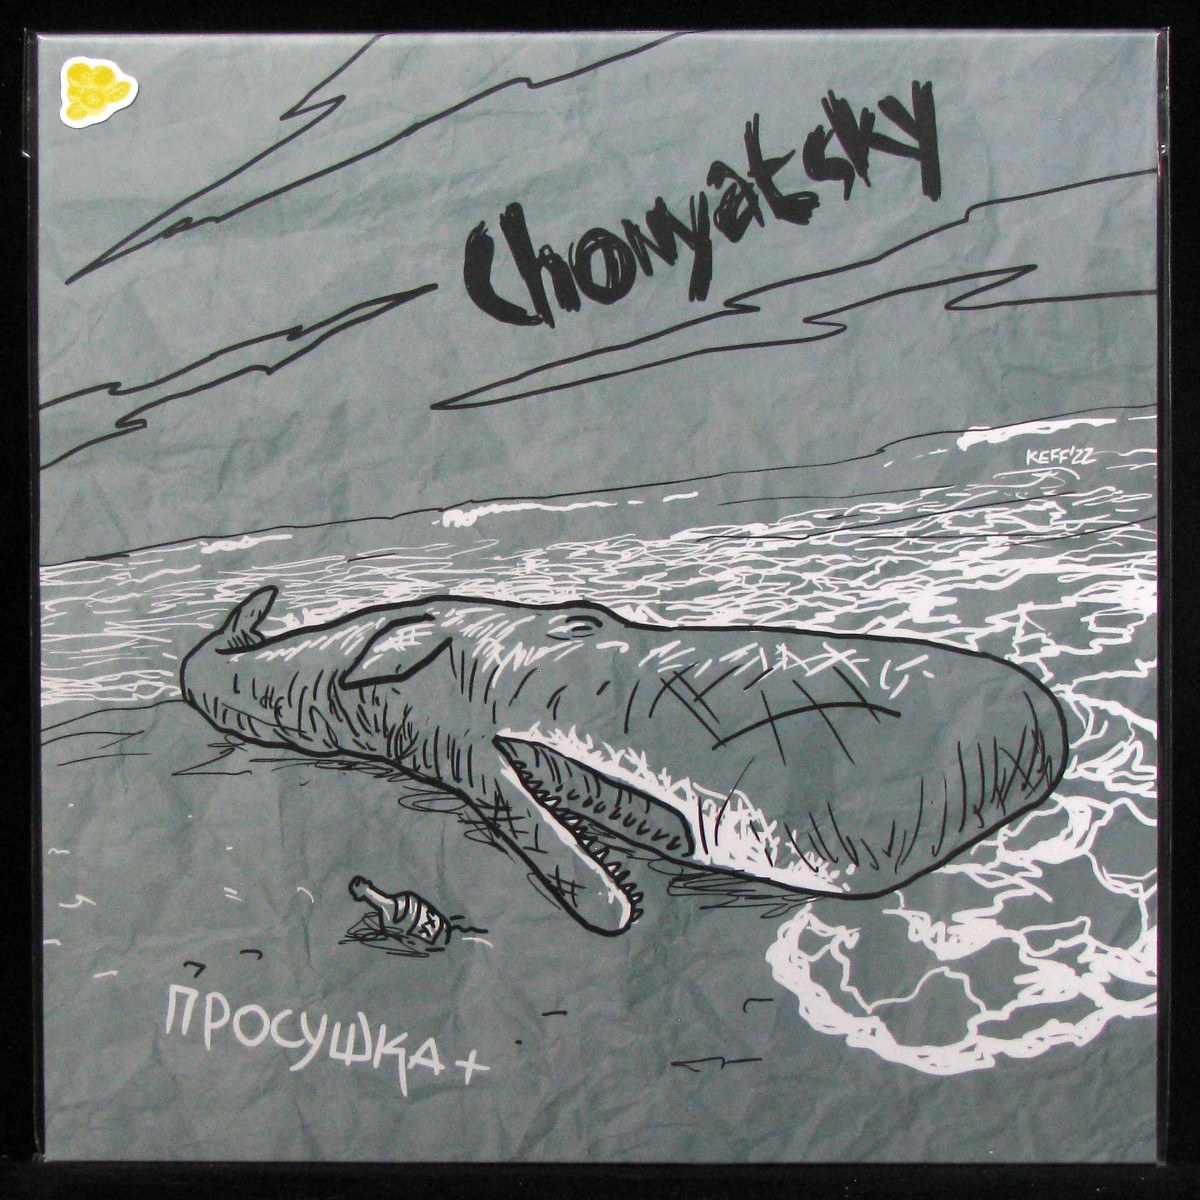 LP Chonyatsky — Просушка + (coloured vinyl) фото